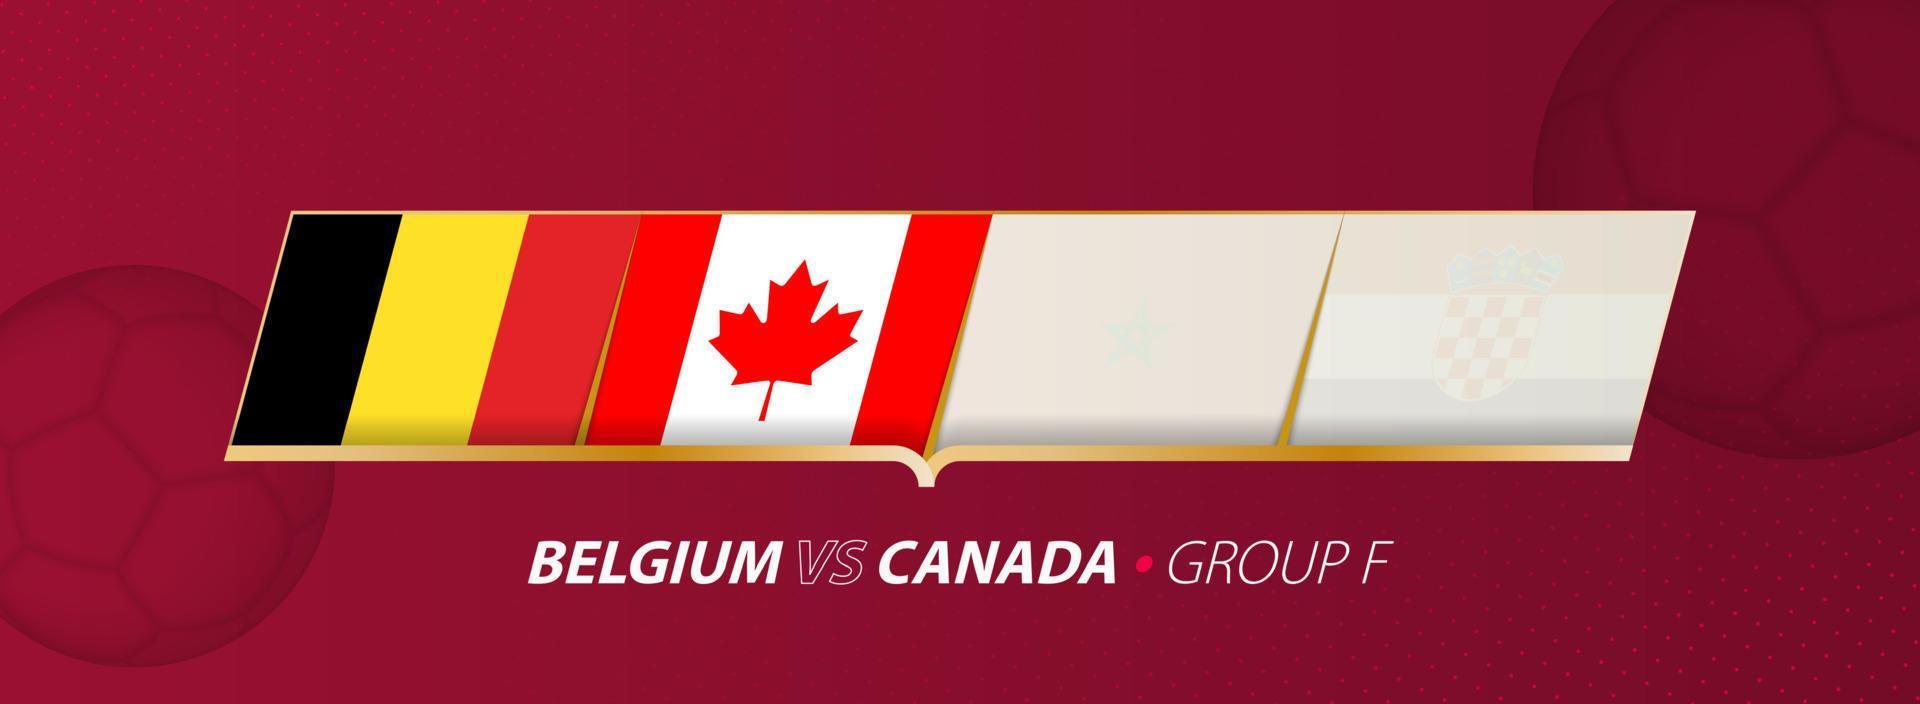 Bélgica - ilustração de jogo de futebol do Canadá no grupo a. vetor